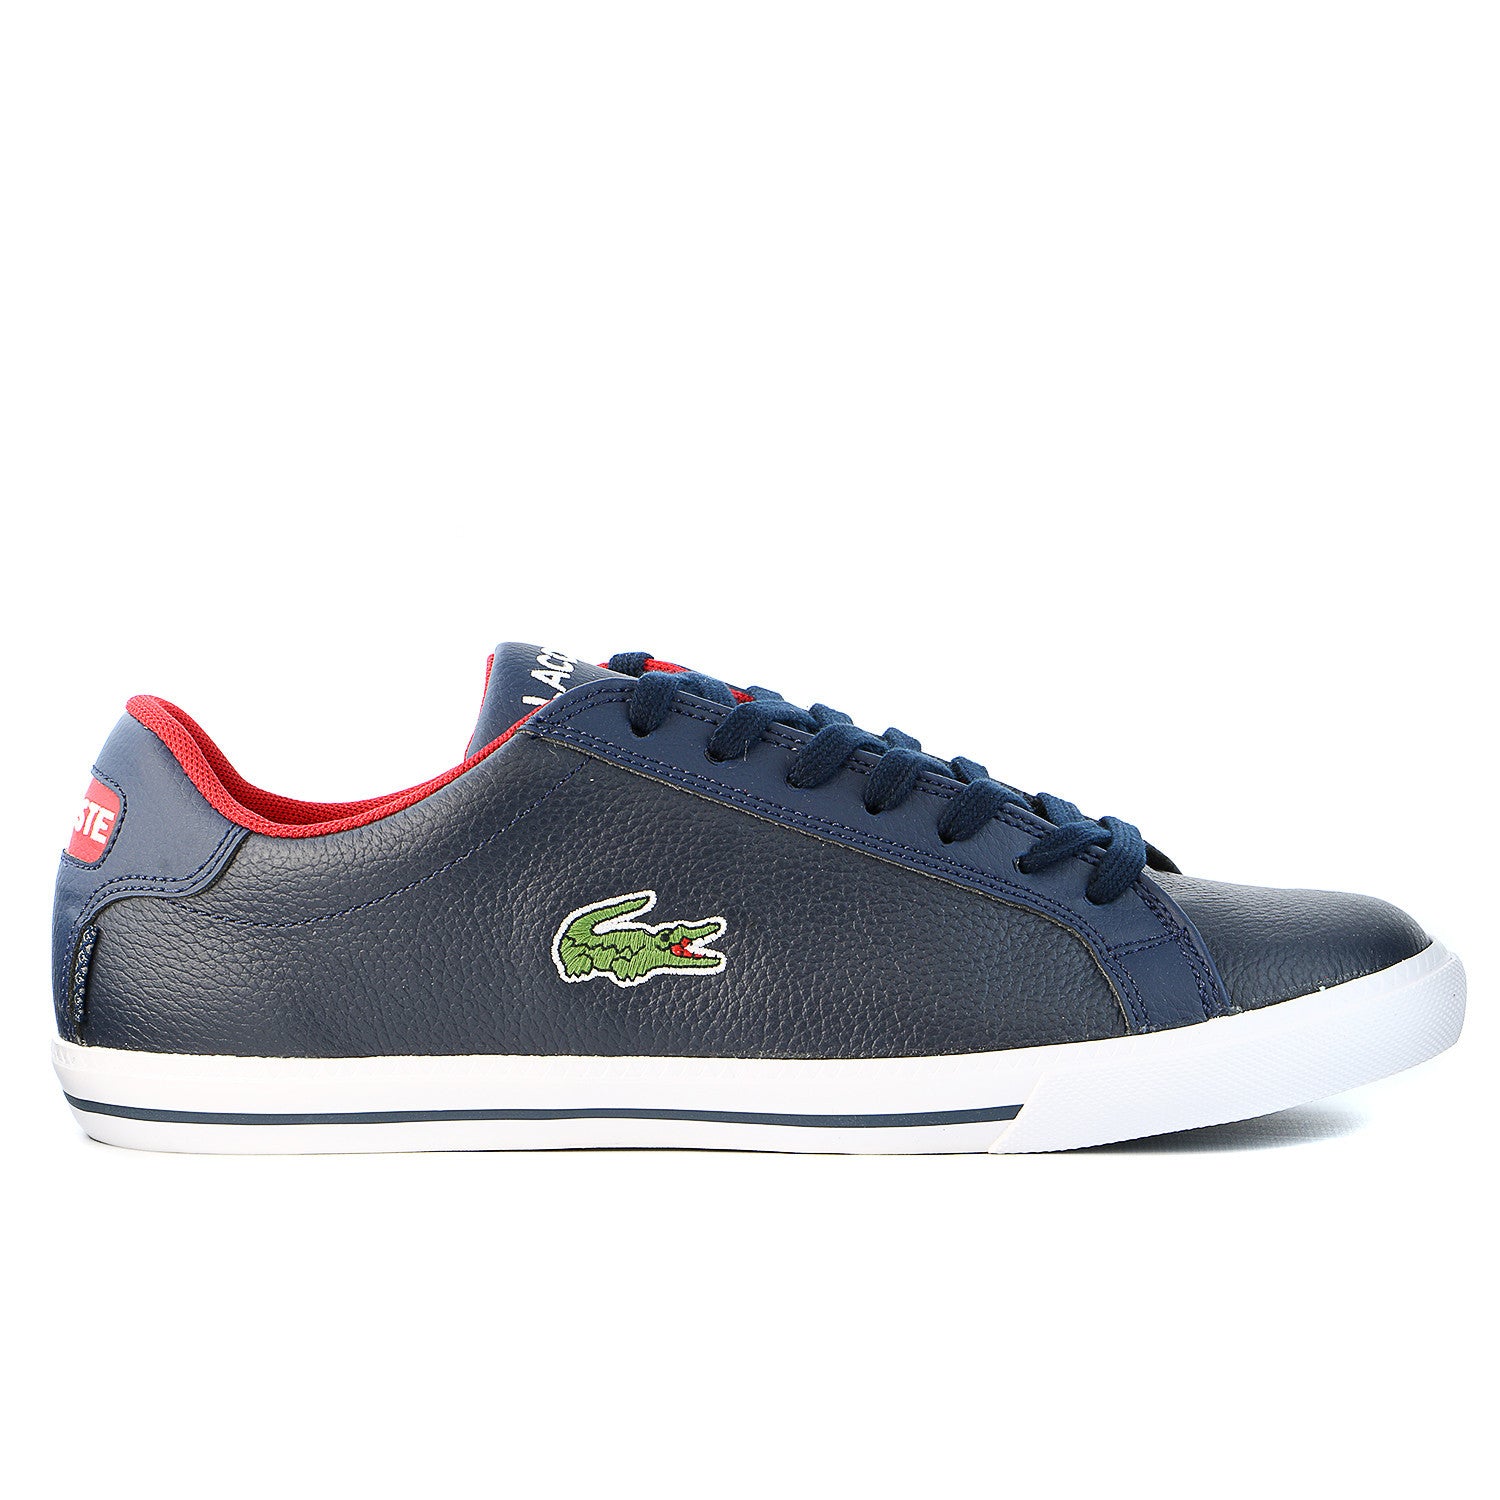 Wasserette prins Afvoer Lacoste Graduate Vulc TS US Fashion Sneaker Shoe - Dark Blue/Red - Men -  Shoplifestyle